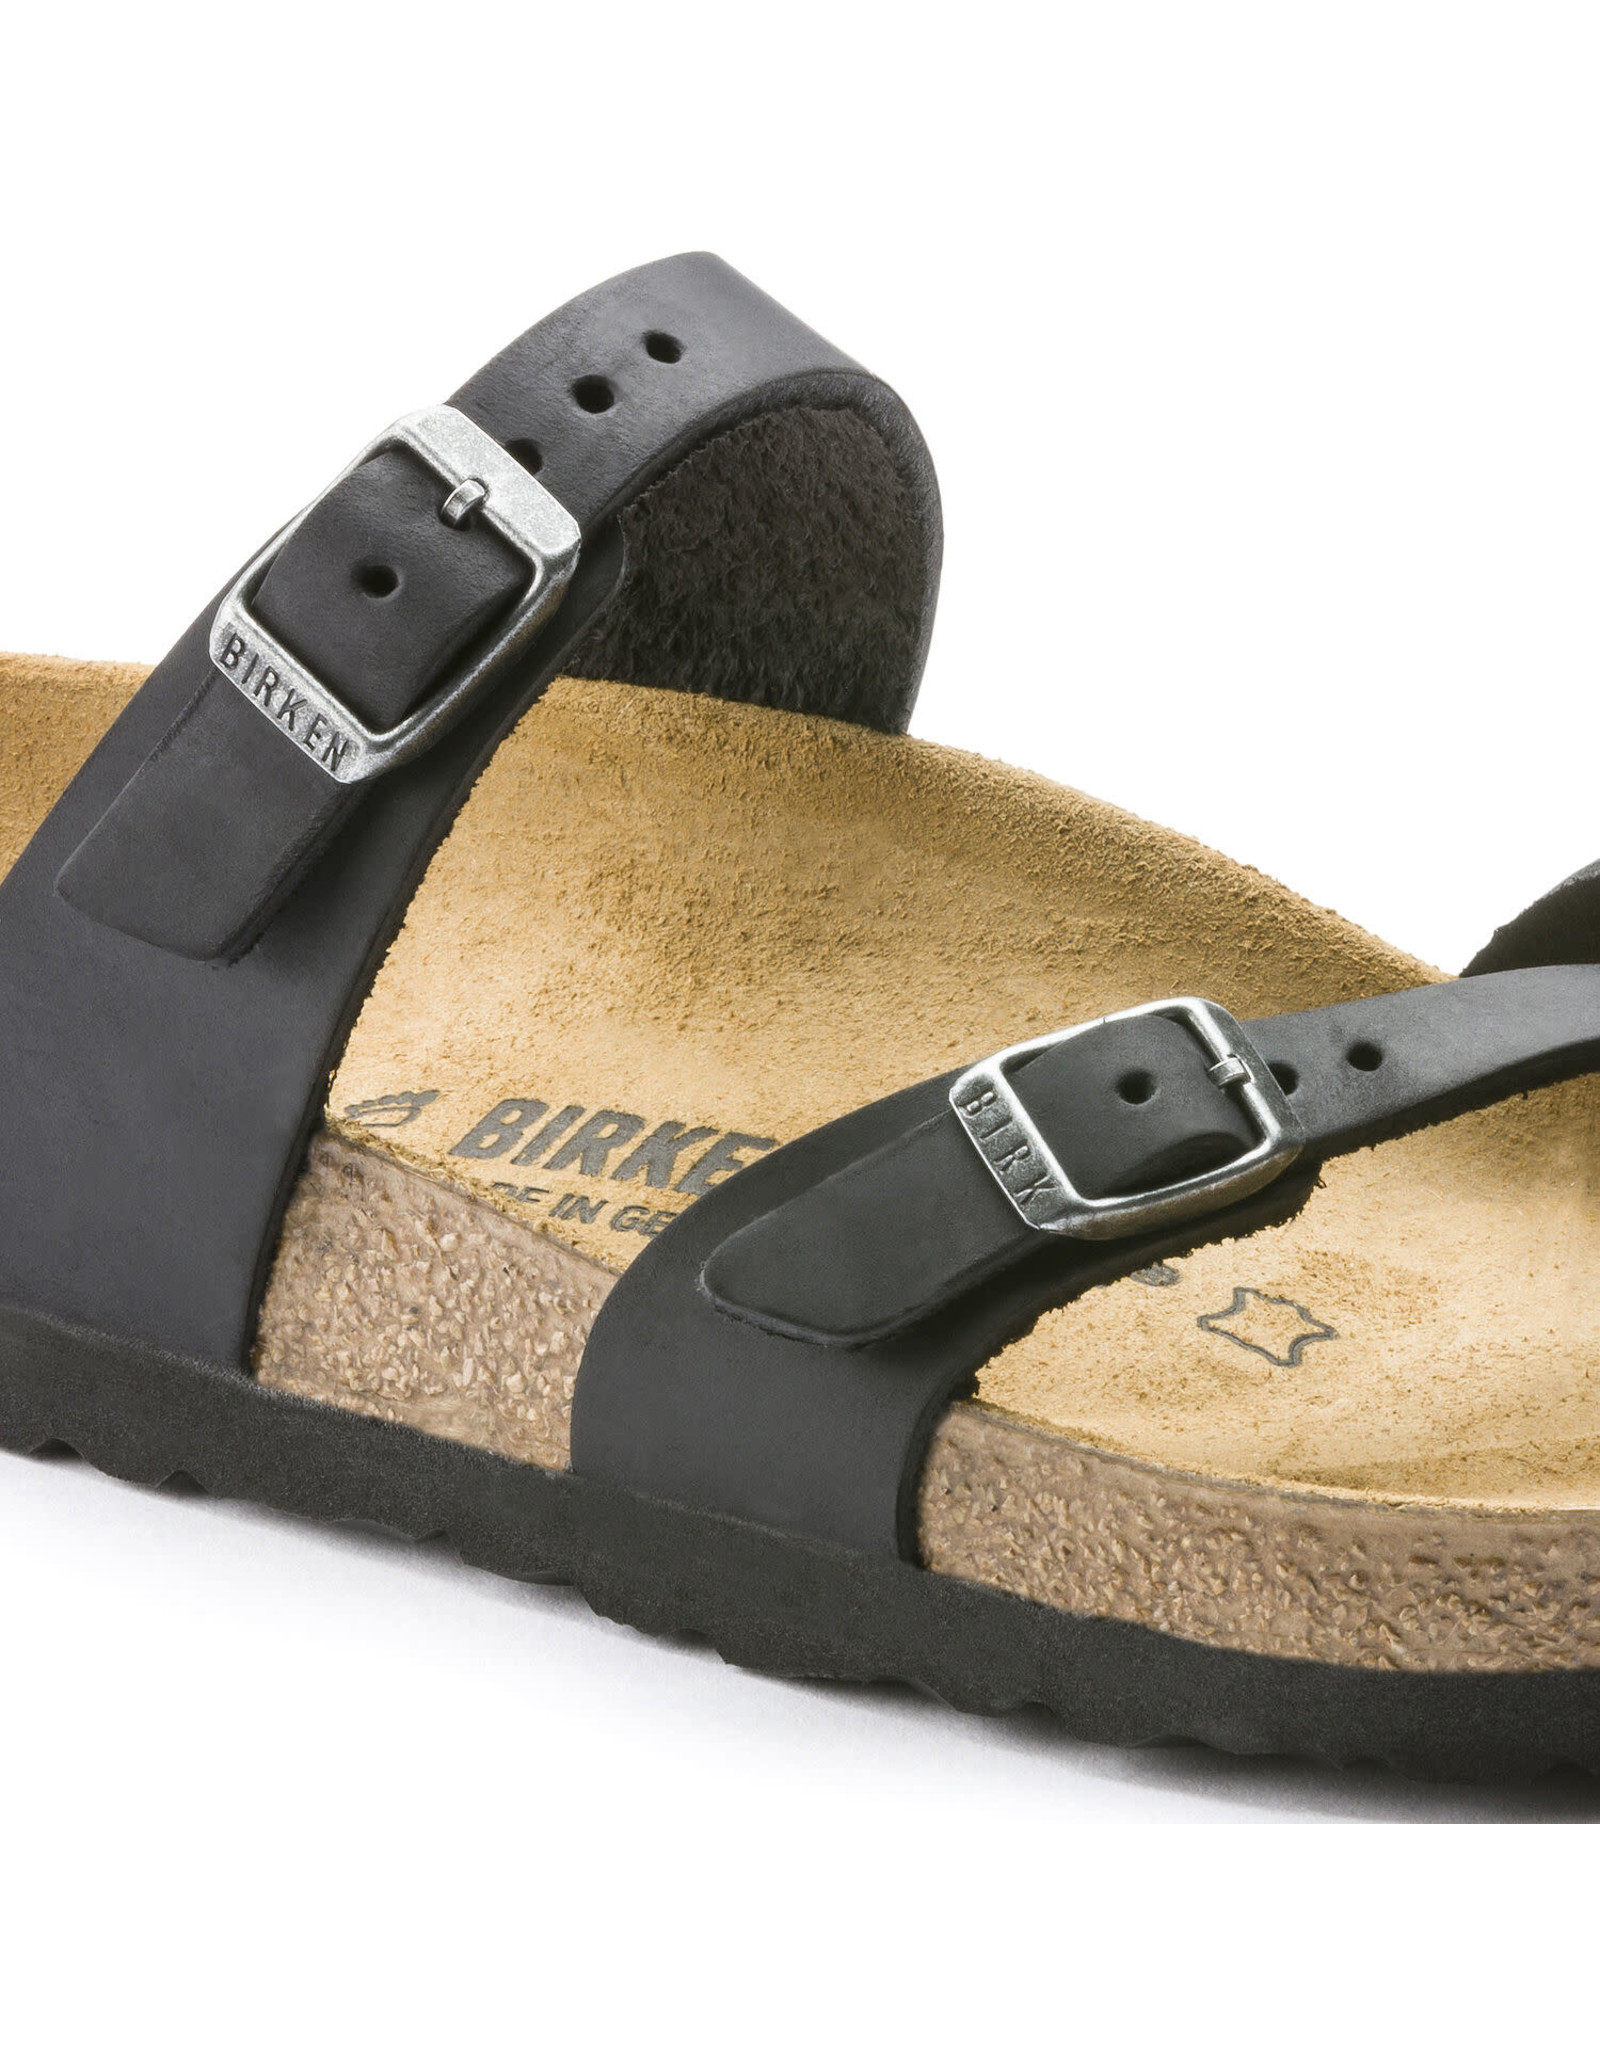 Birkenstock Mayari Oiled Leather Sandal